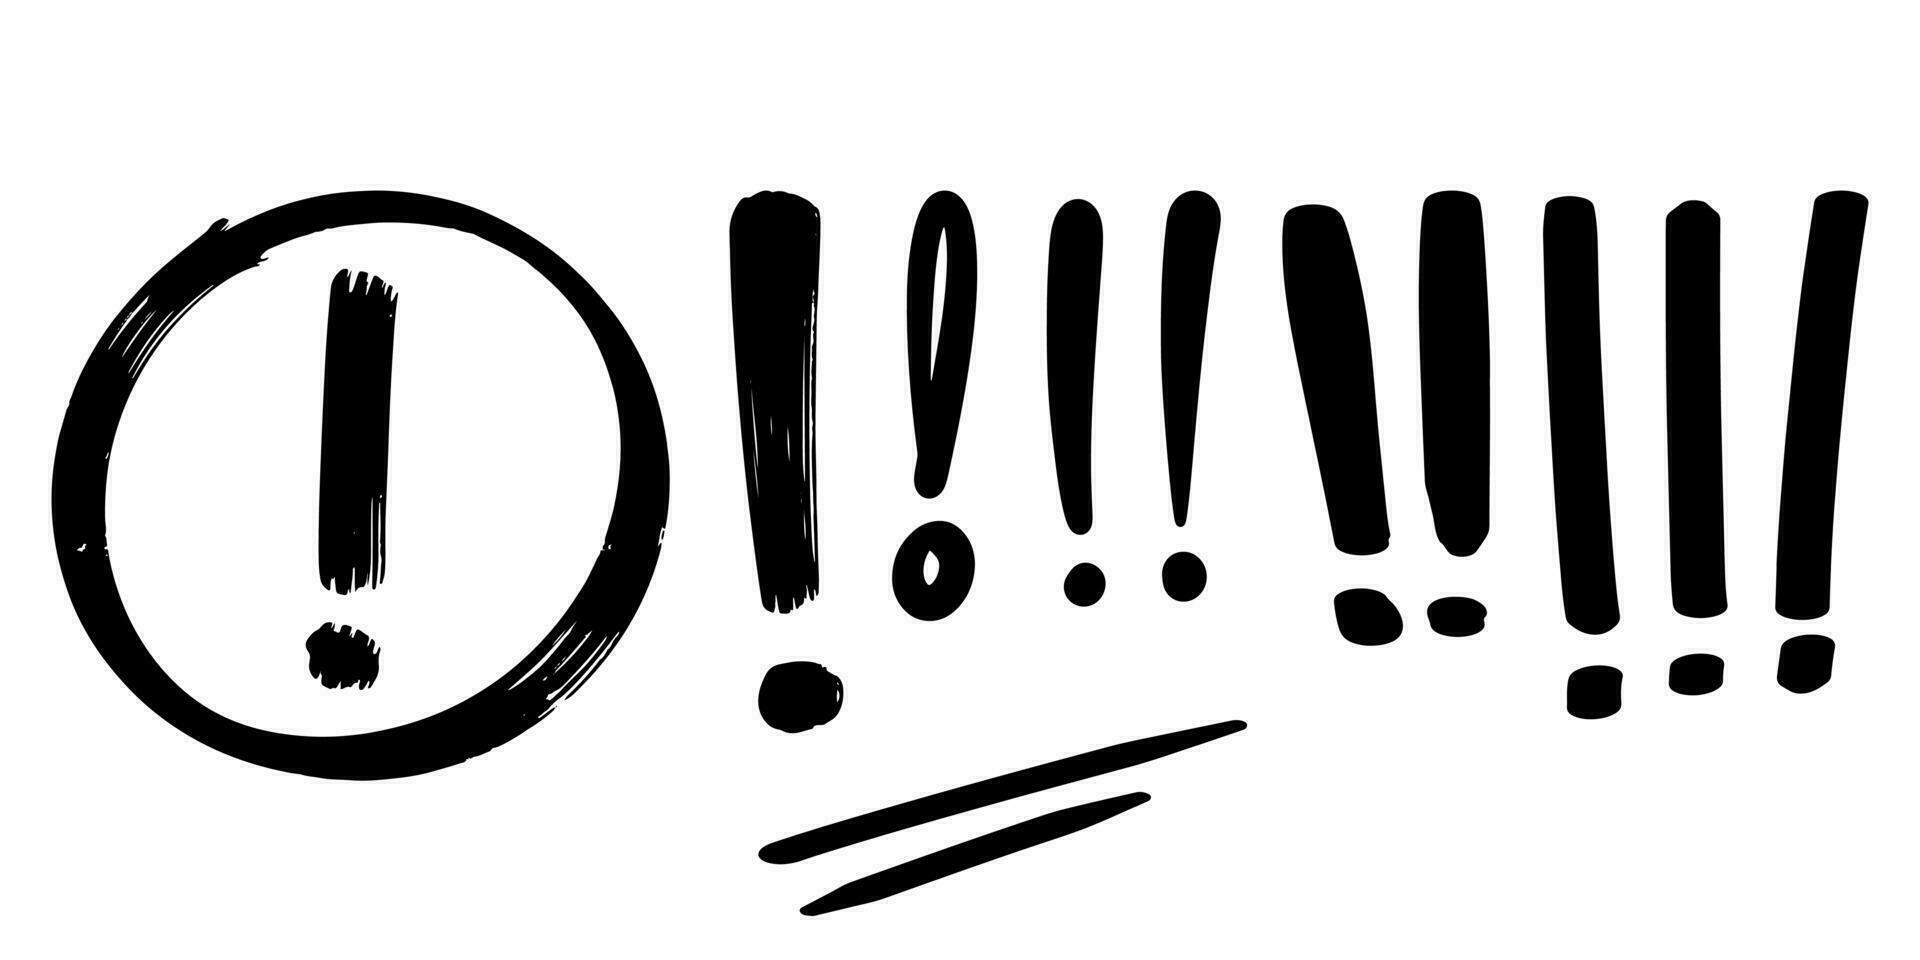 estilo de esboço doodle de ilustração vetorial de ponto de exclamação desenhada à mão. vetor